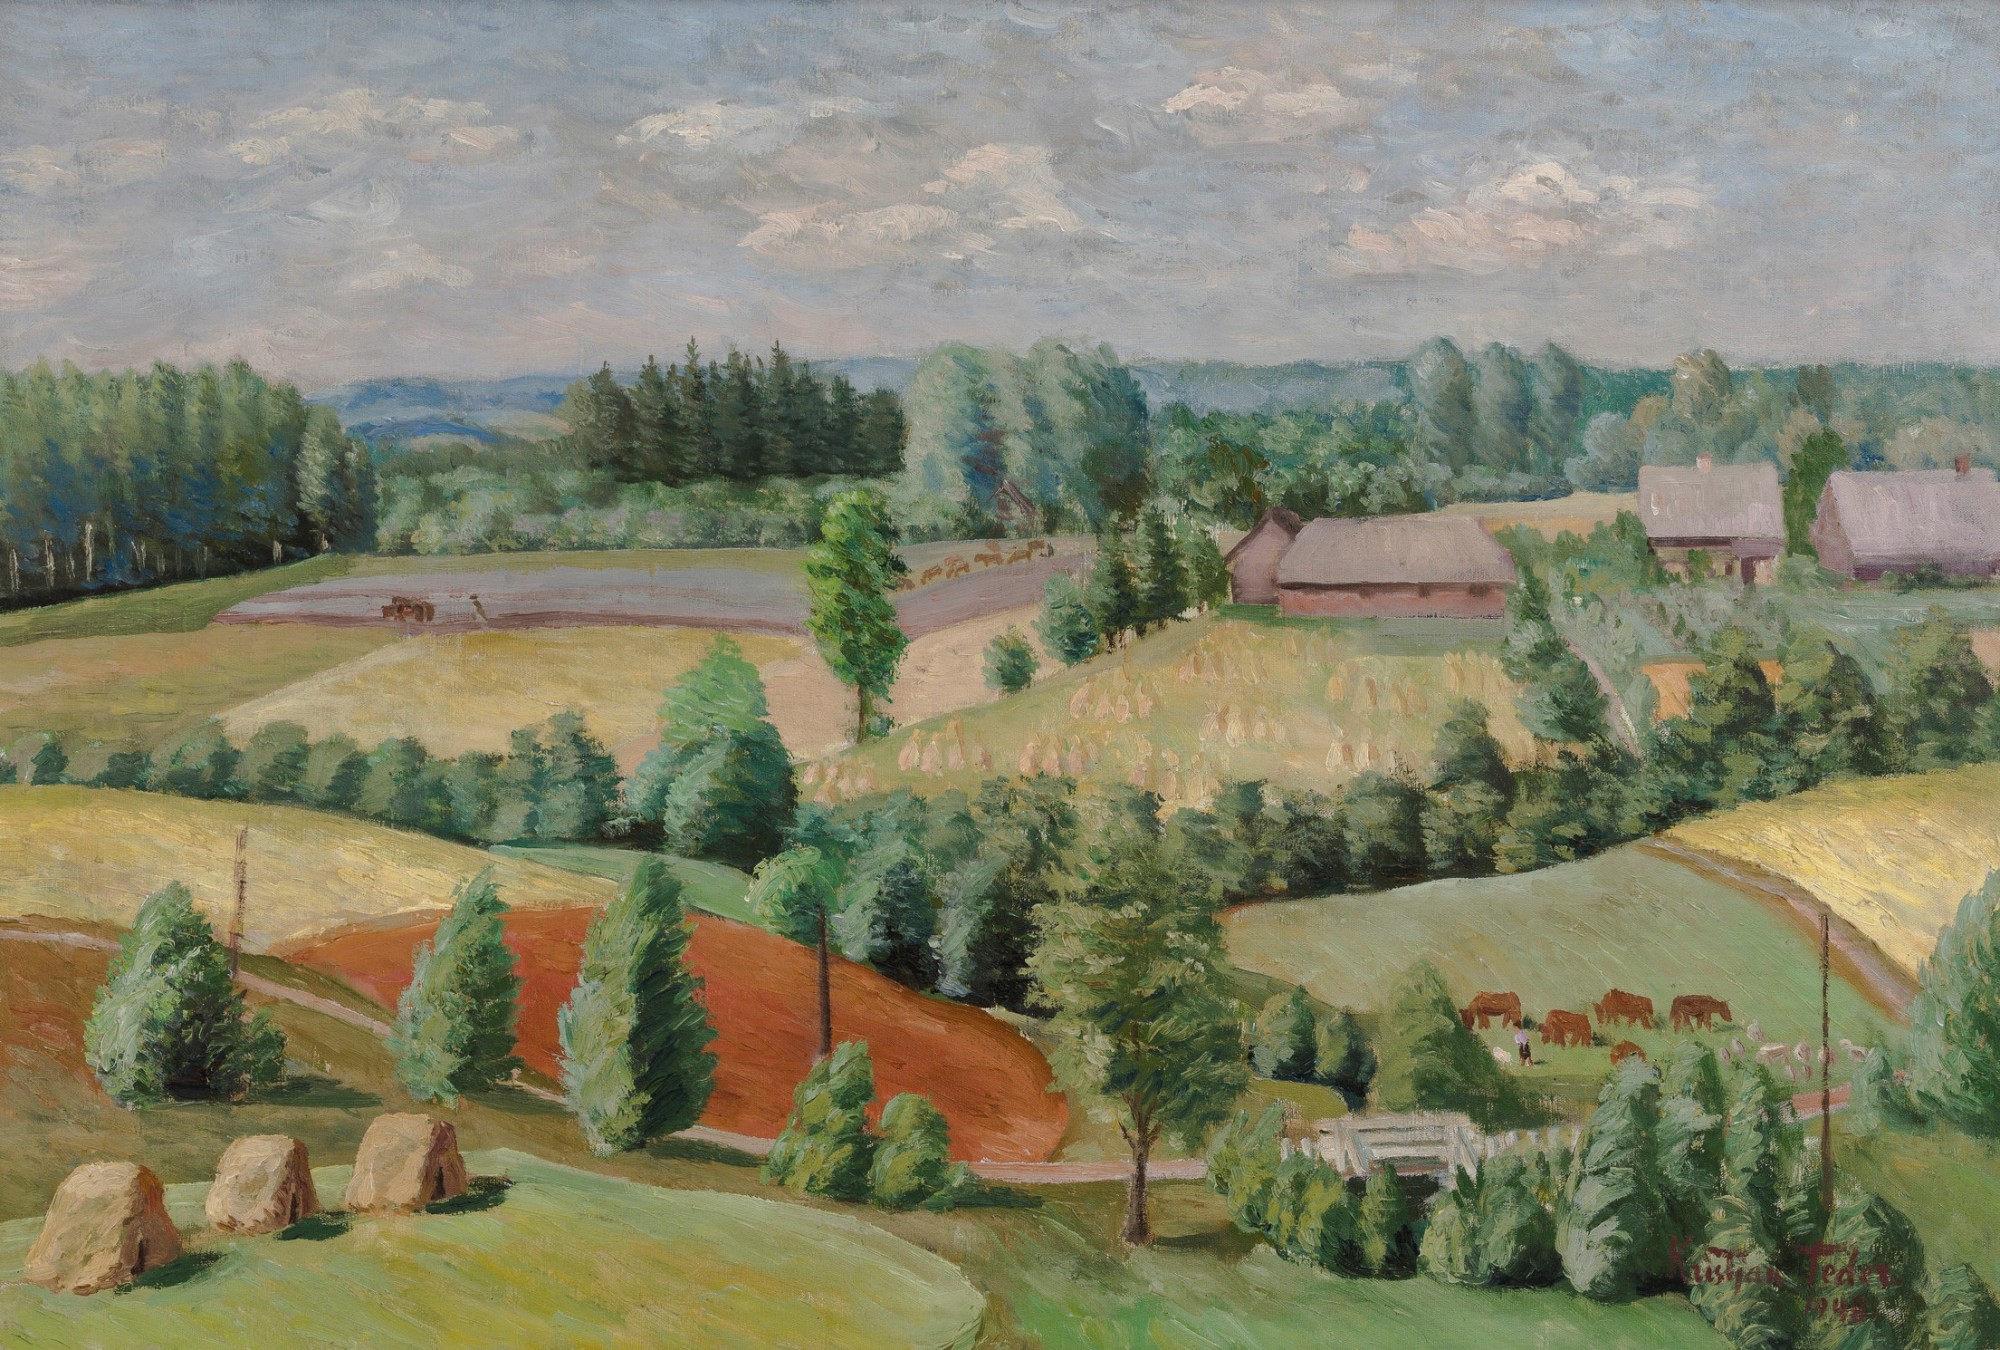 Kristjan Teder "Mägiste Landscape"